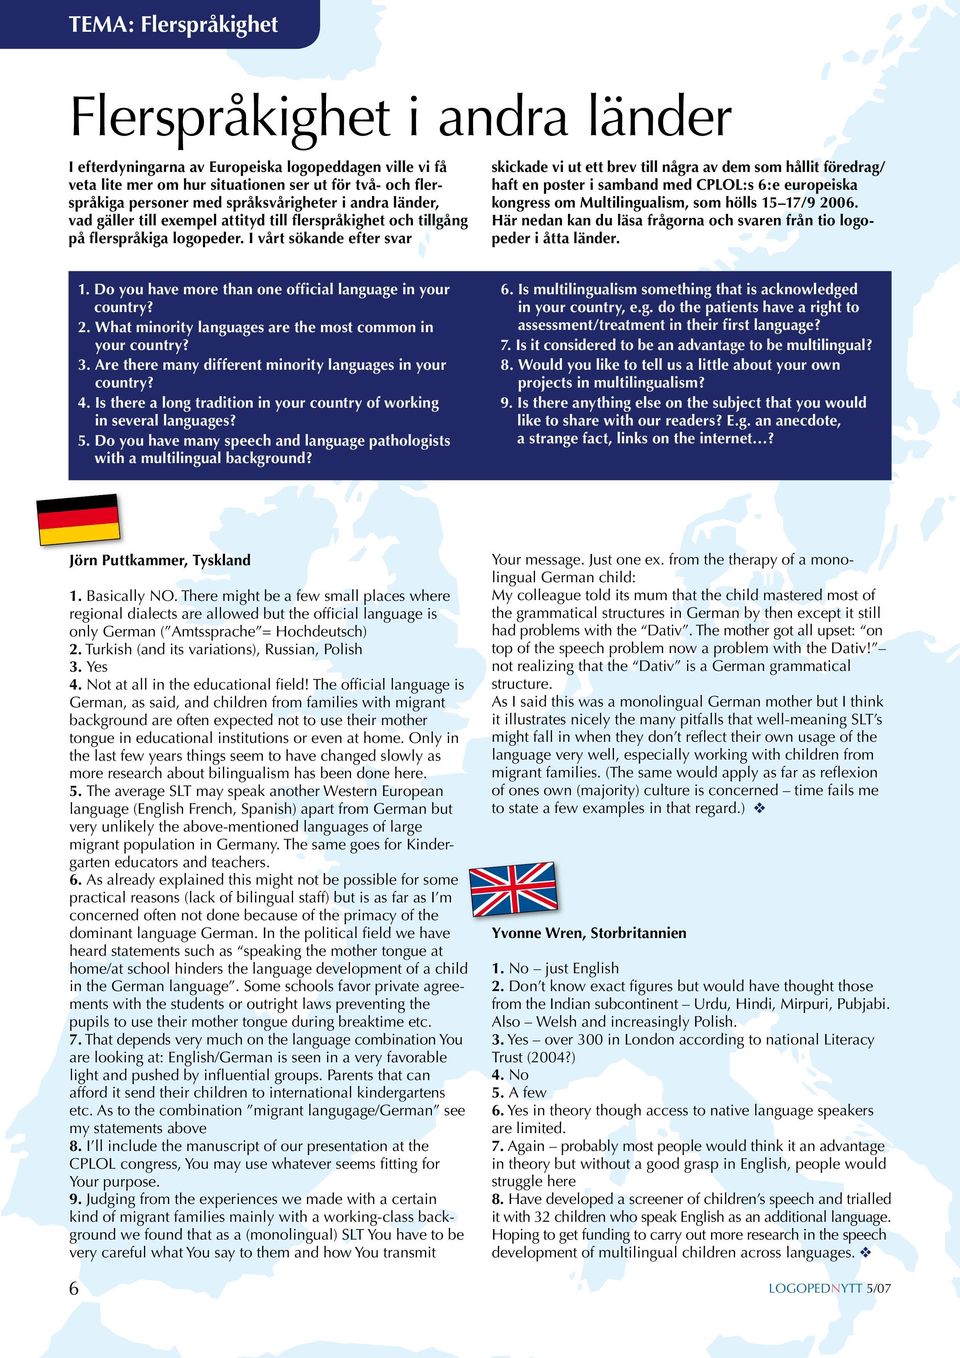 I vårt sökande efter svar skickade vi ut ett brev till några av dem som hållit föredrag/ haft en poster i samband med CPLOL:s 6:e europeiska kongress om Multilingualism, som hölls 15 17/9 2006.